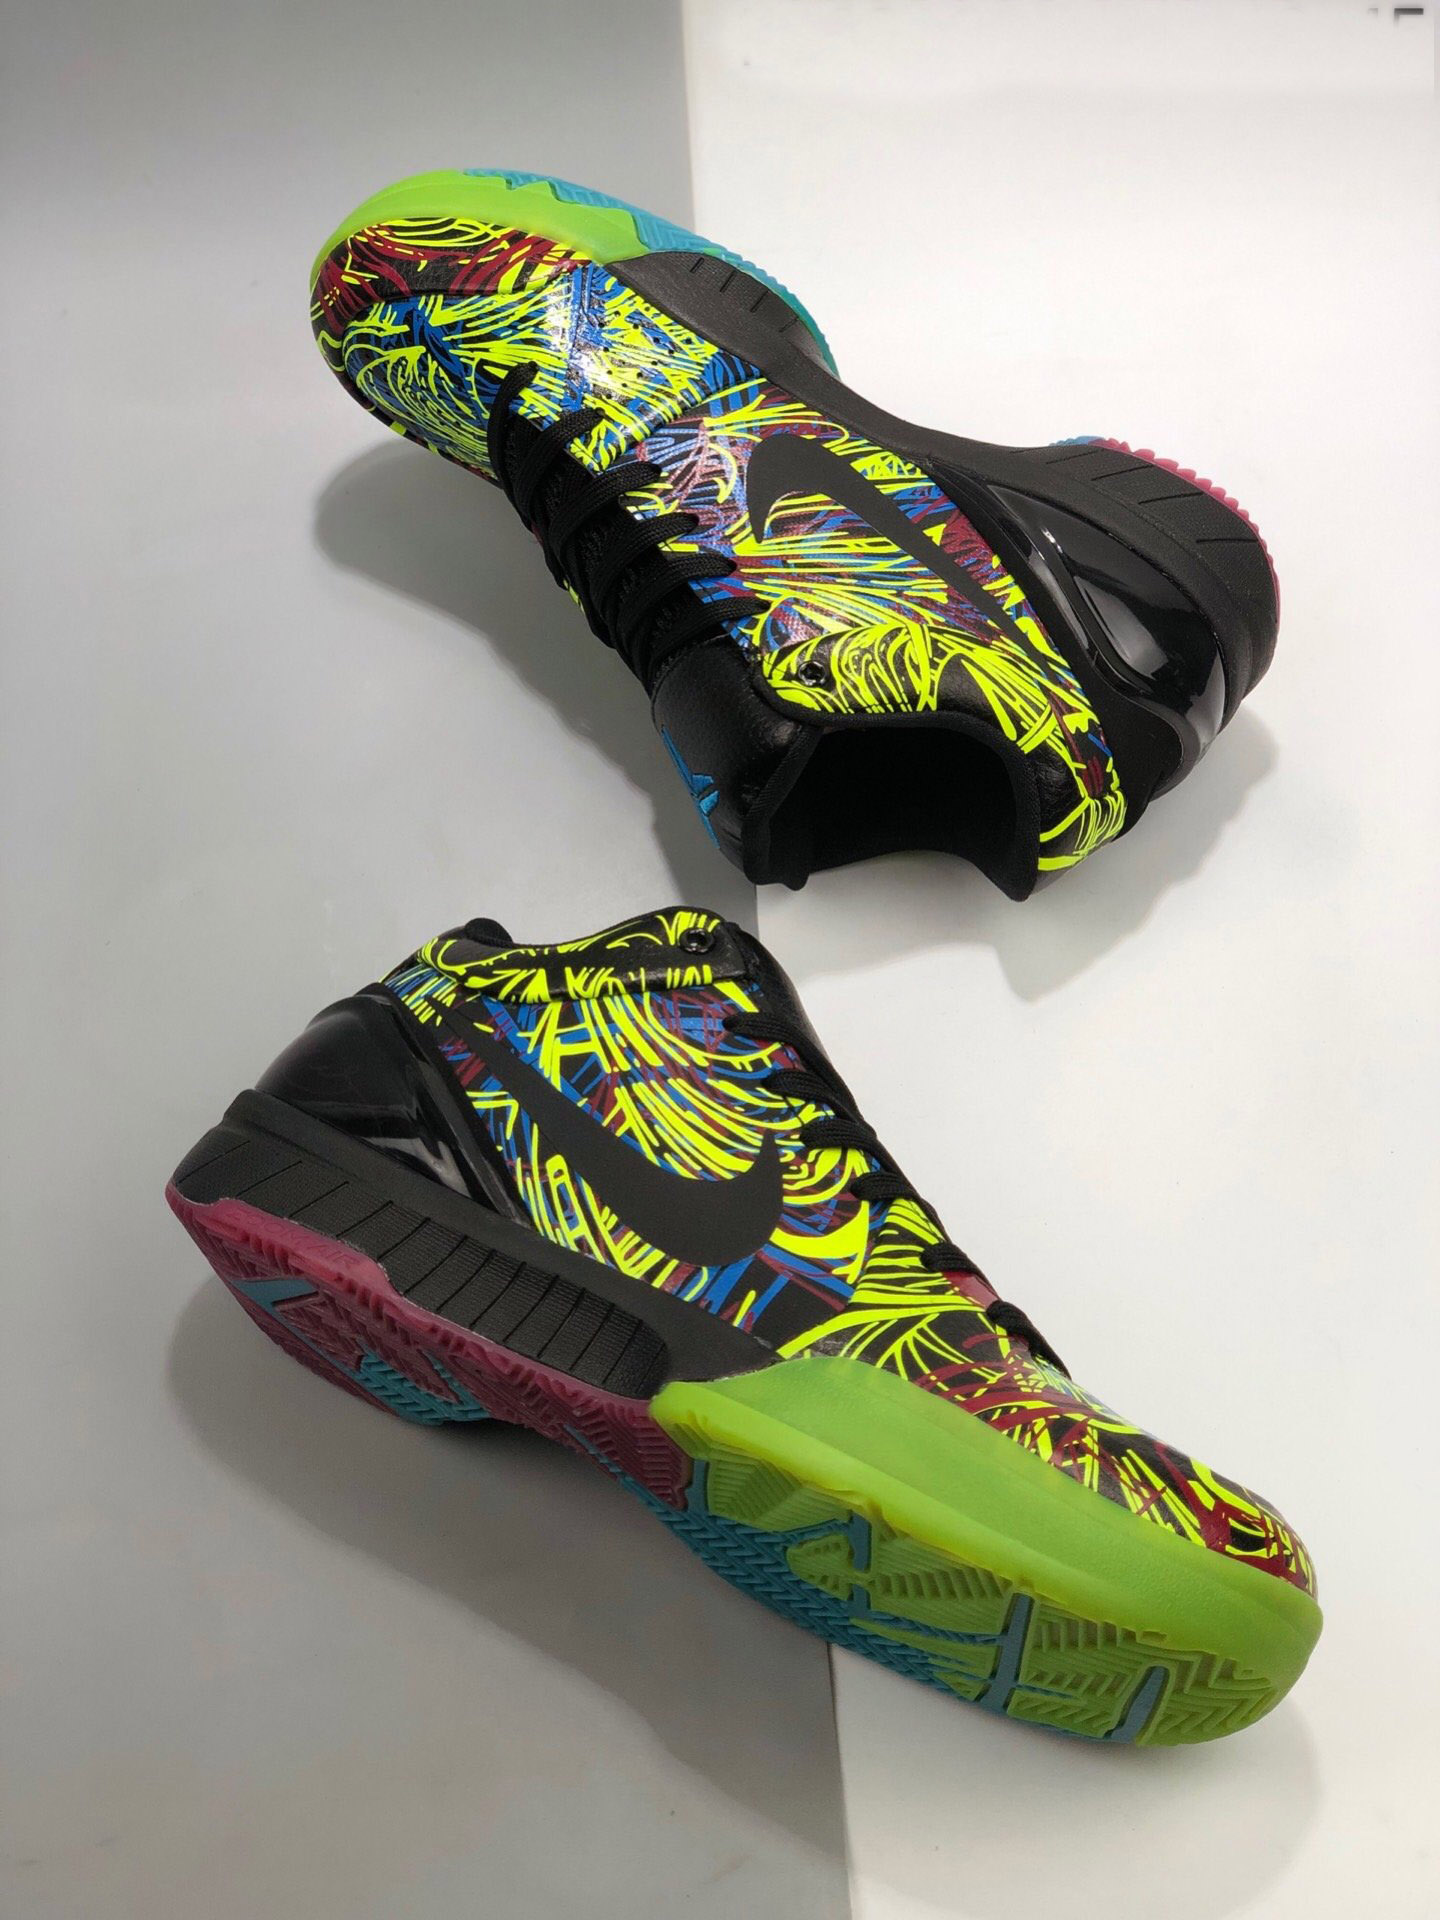 Nike Kobe 4 Protro “Wizenard” CV3469-001 For Sale – Sneaker Hello